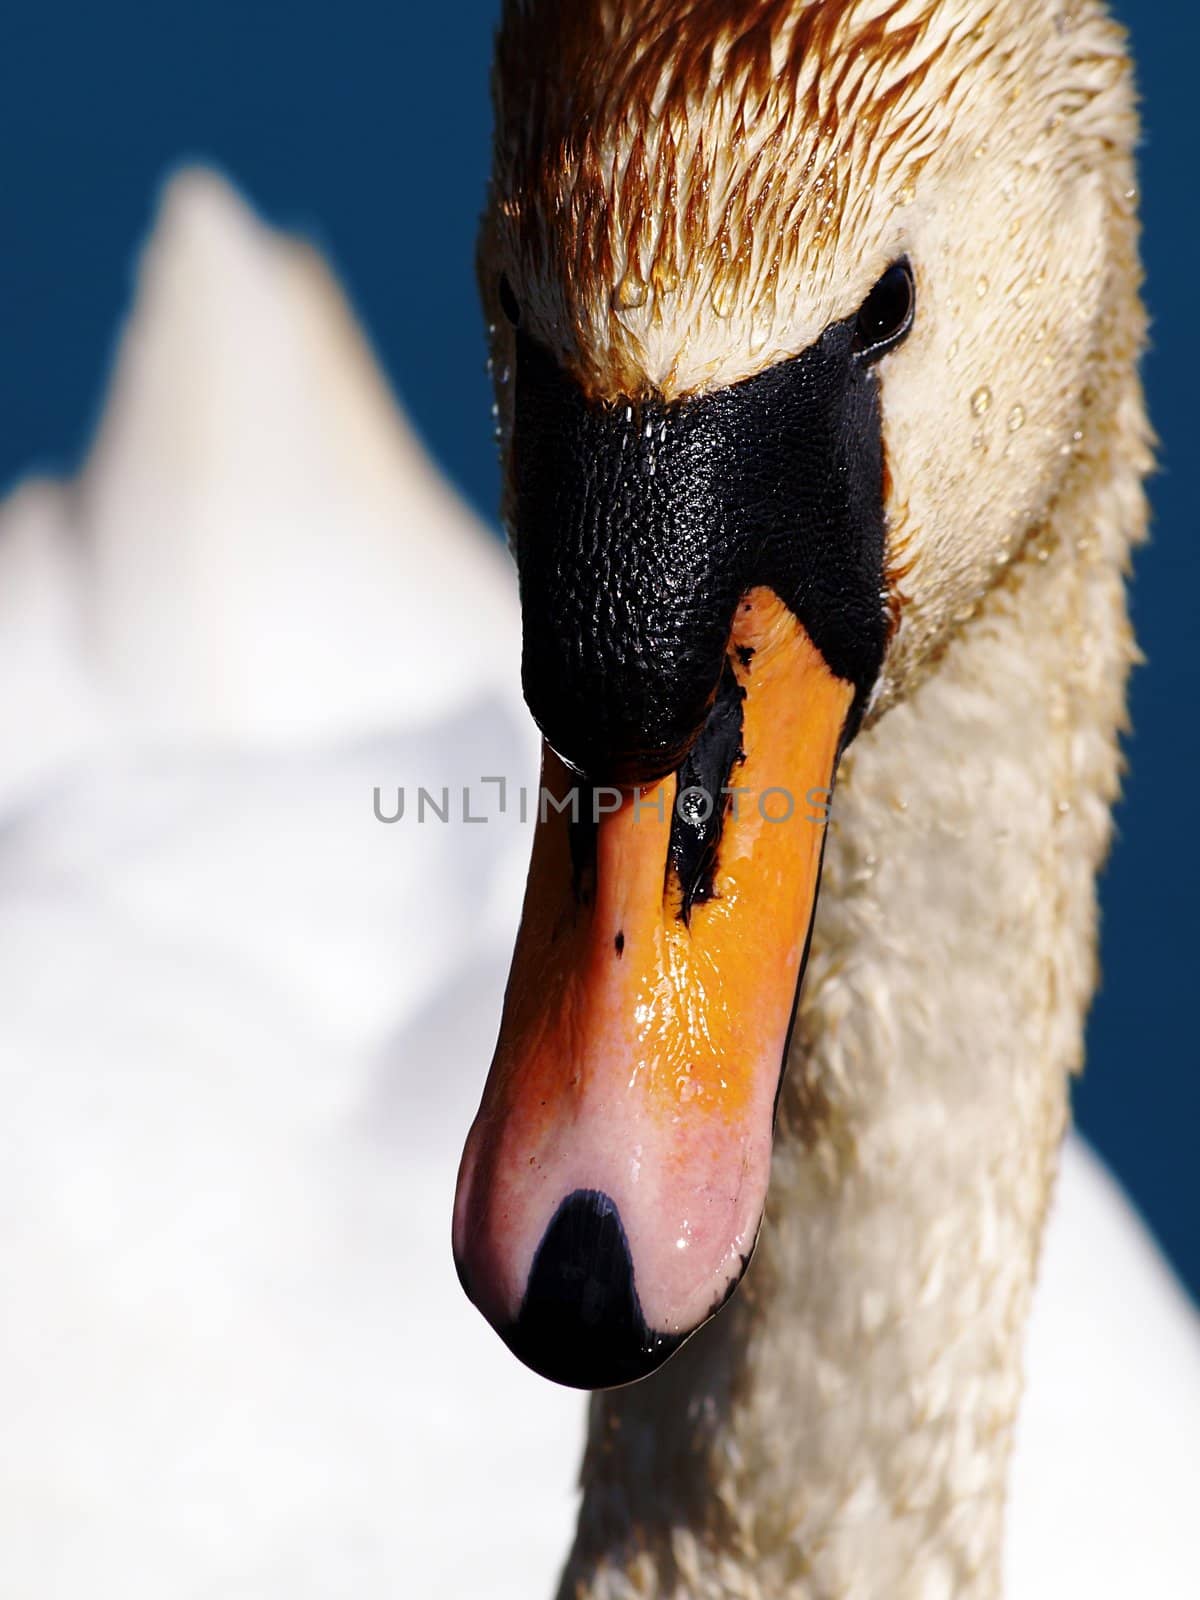 Mute swan by Arvebettum